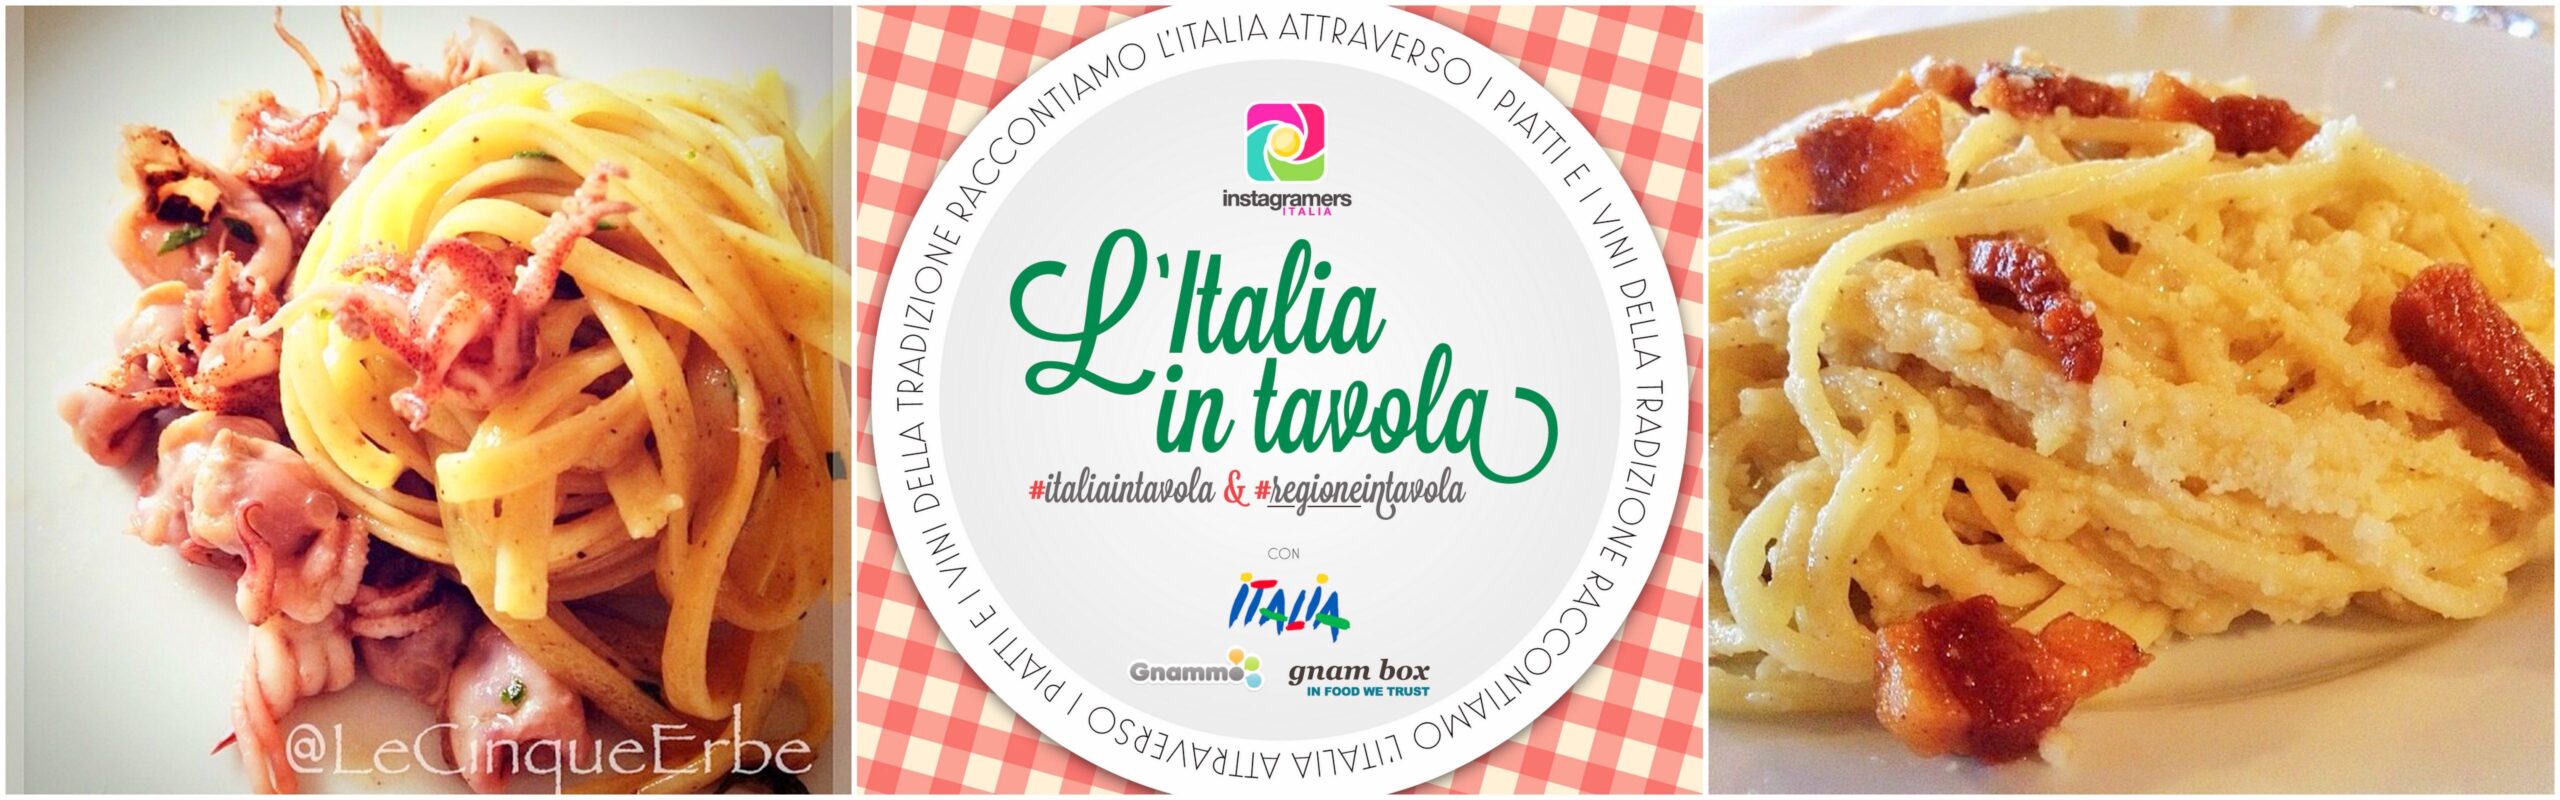 Italiaintavola, il contest che racconta la cucina italiana attraverso le immagini